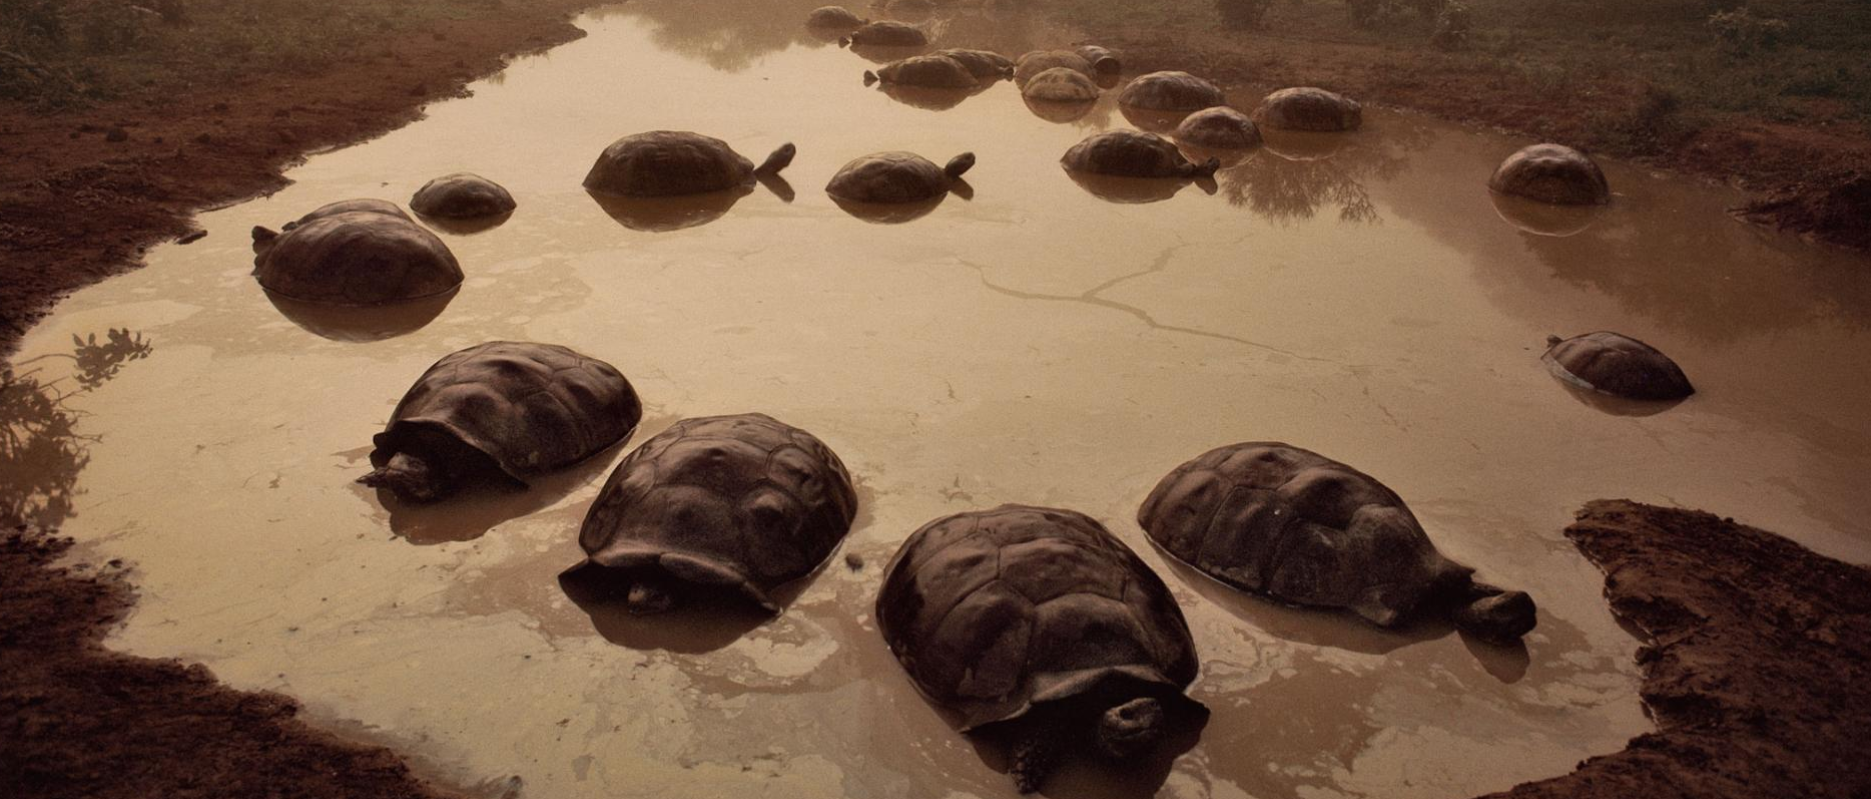 Darwin đã rất ngạc nhiên khi thấy nhiều rùa khổng lồ ở đảo Galápagos, Ecuador ngày nay.